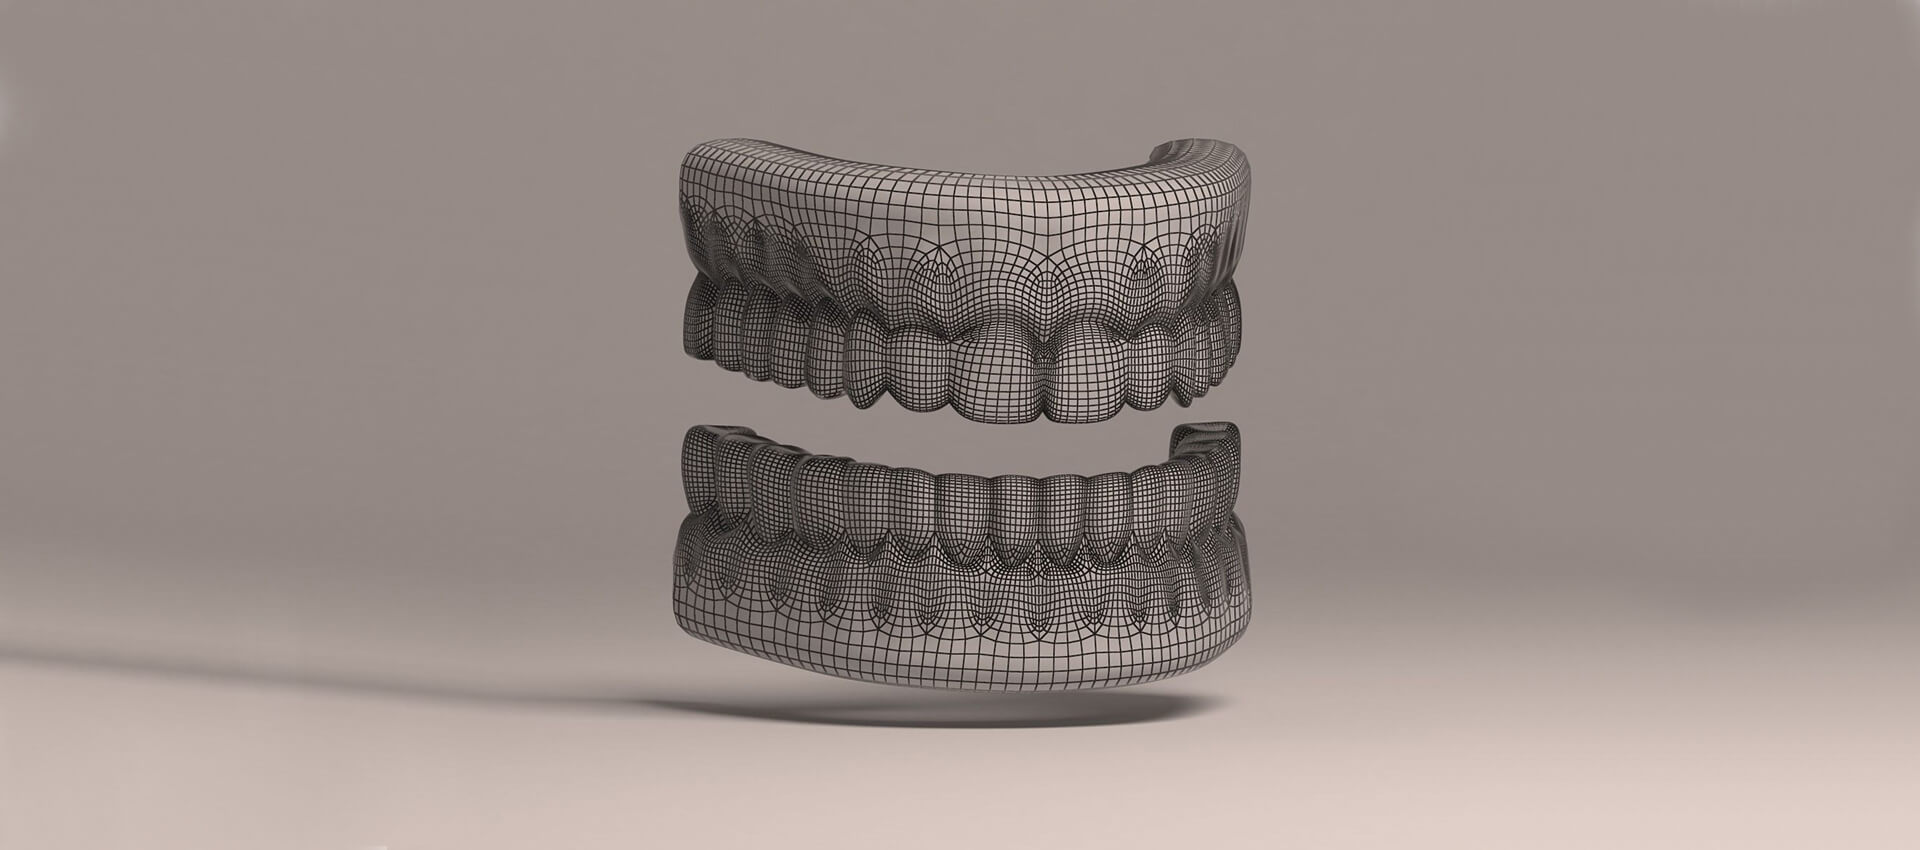 Curaprox - Moderní osvětou dentální hygieny měníme s klientem vnímání jeho značky.